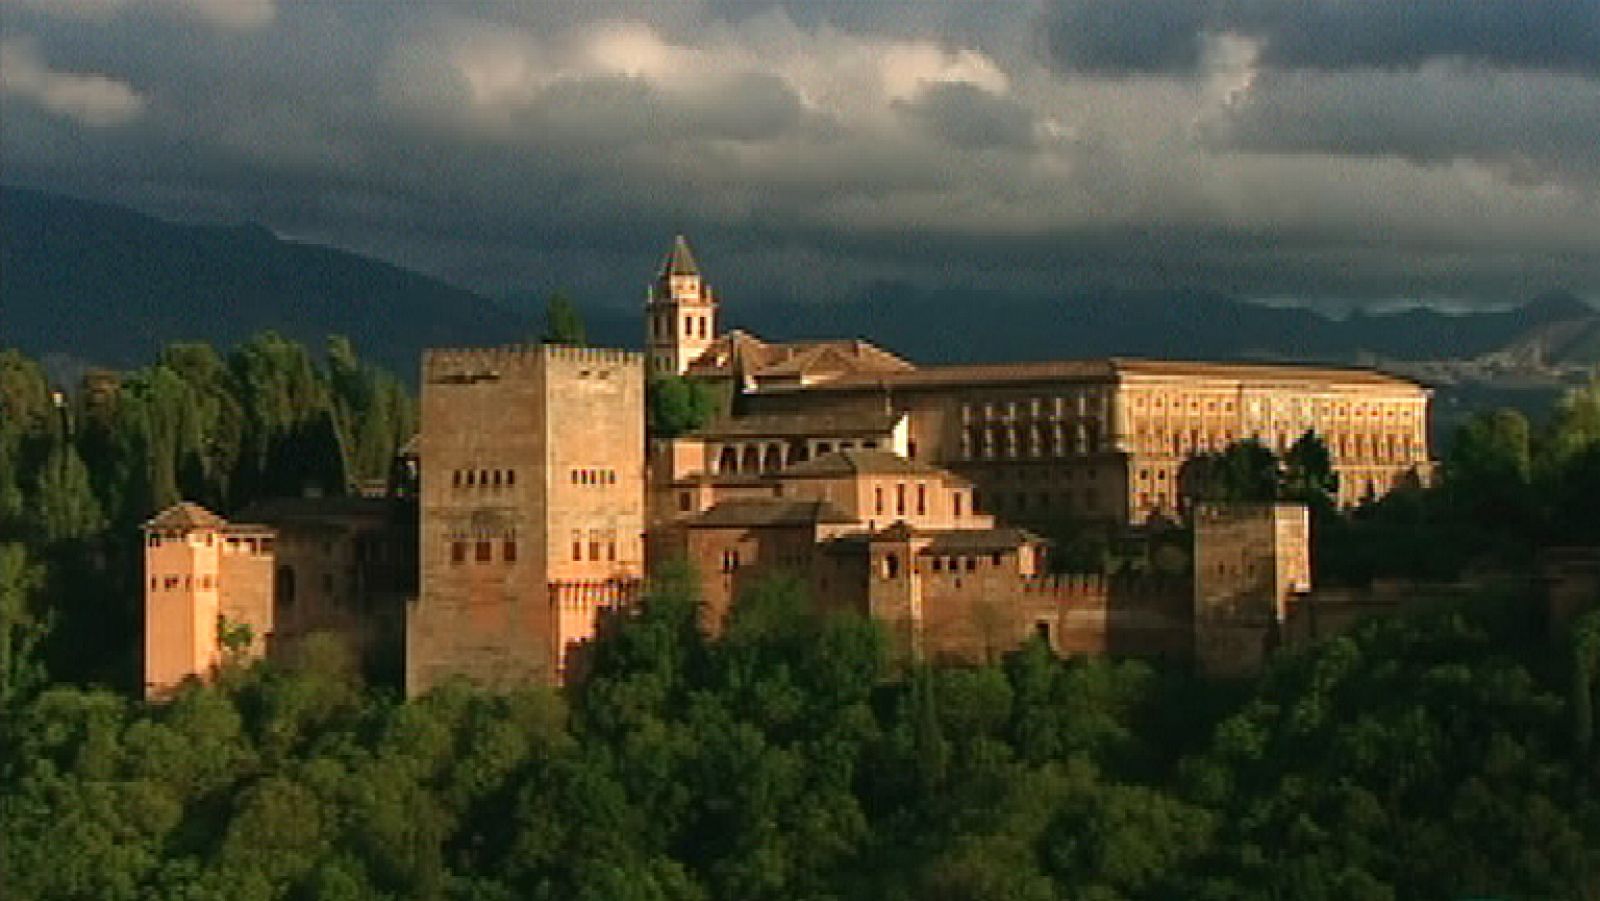 La mitad invisible - La Alhambra de Granada